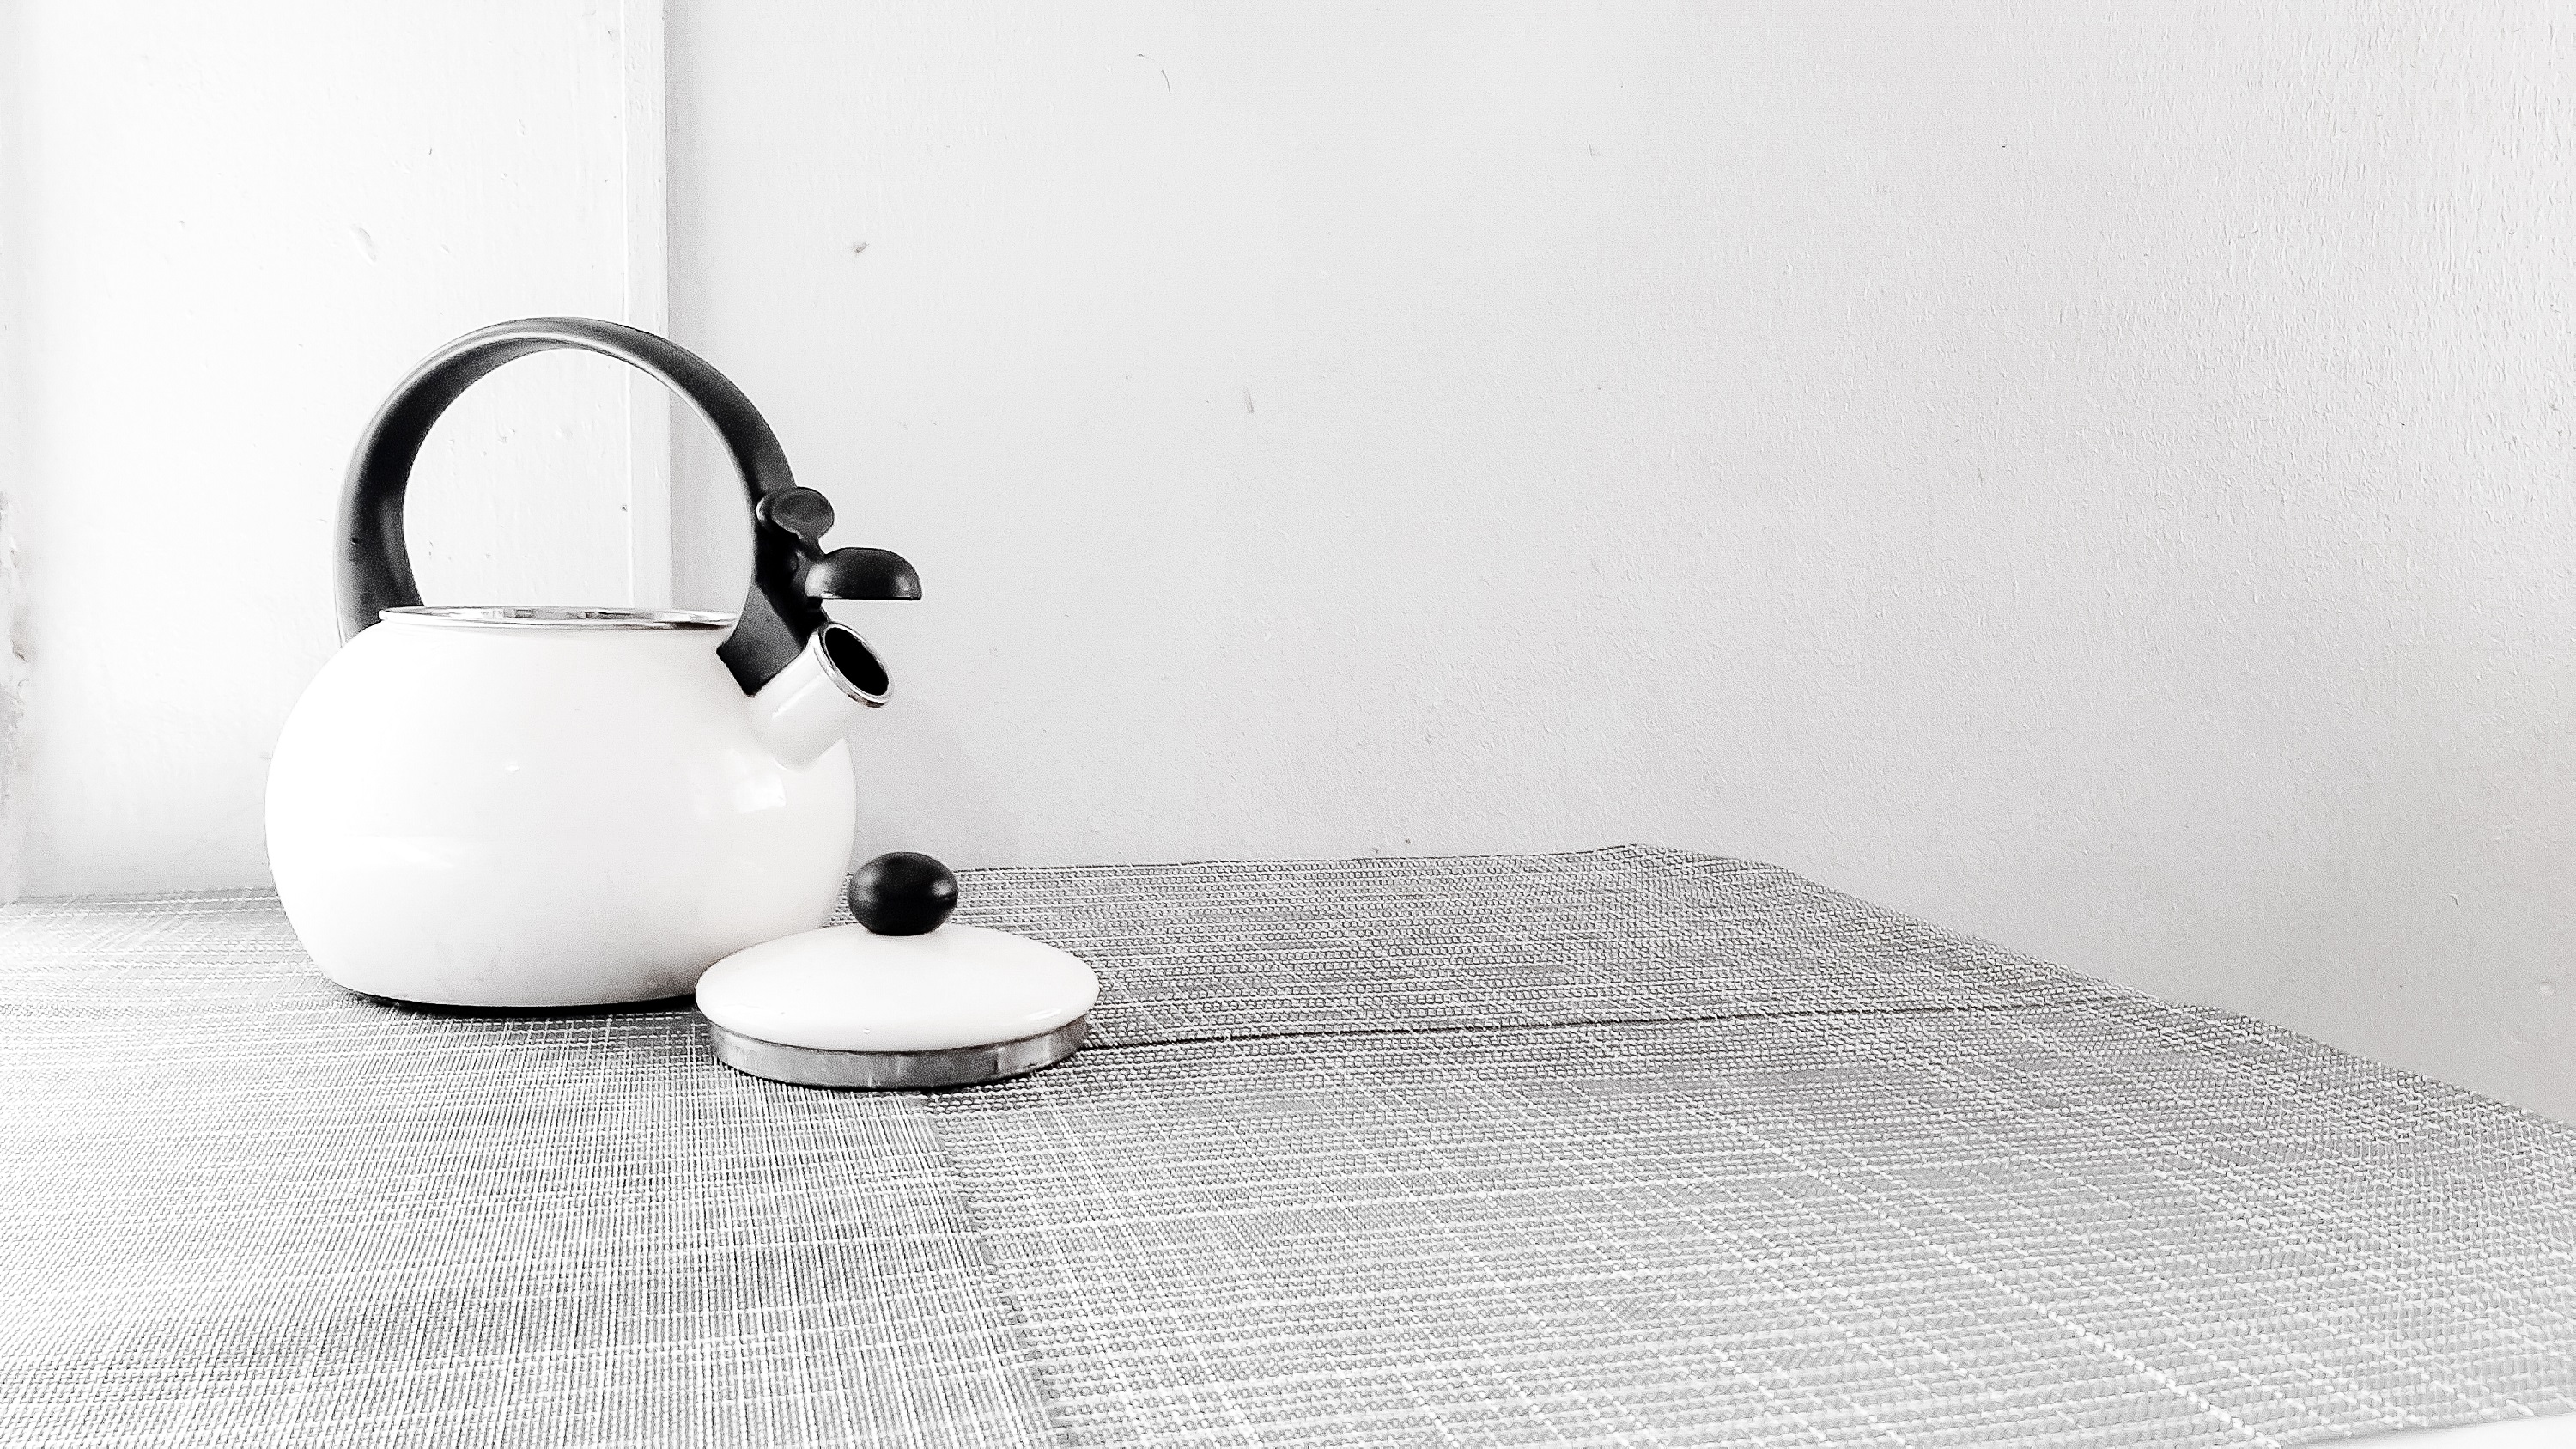 tea-kettle-black-and-white.jpg